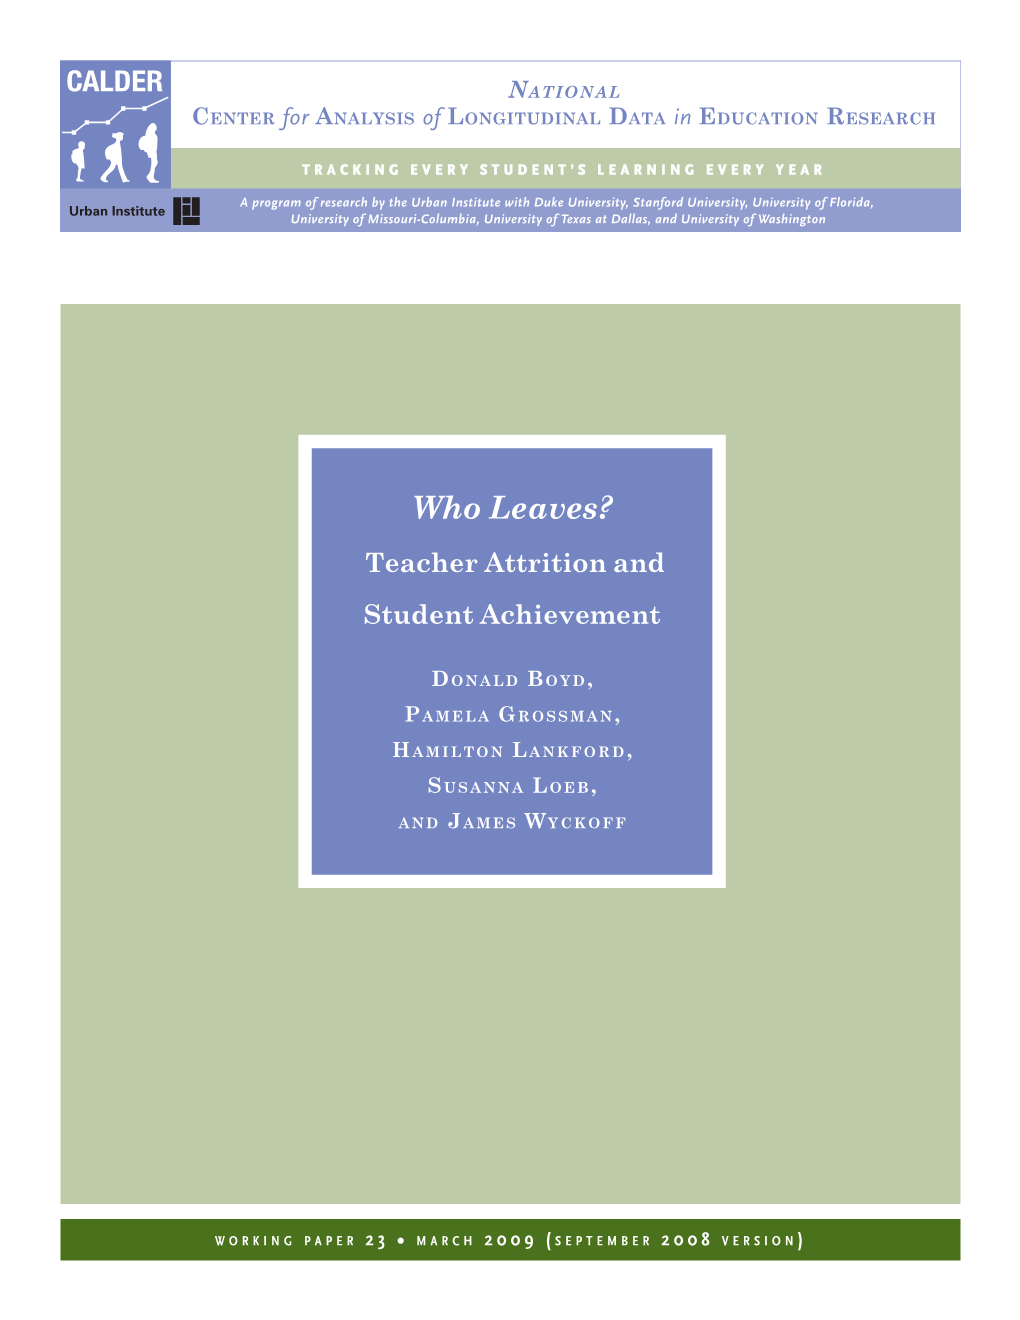 Teacher Attrition and Student Achievement